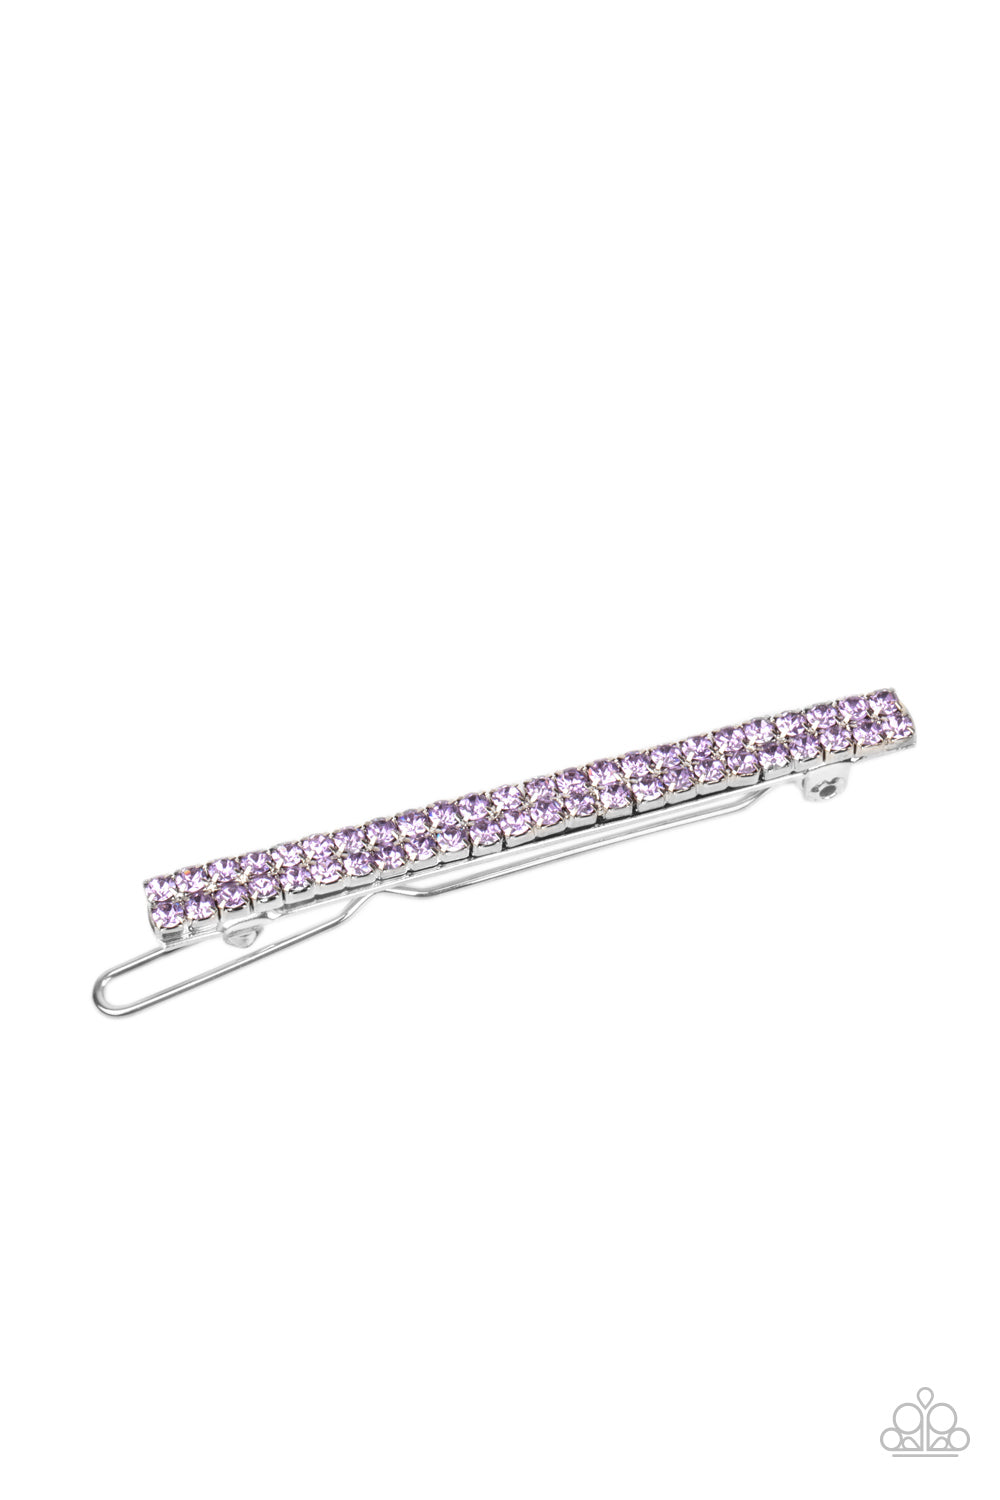 five-dollar-jewelry-thats-glow-biz-purple-paparazzi-accessories